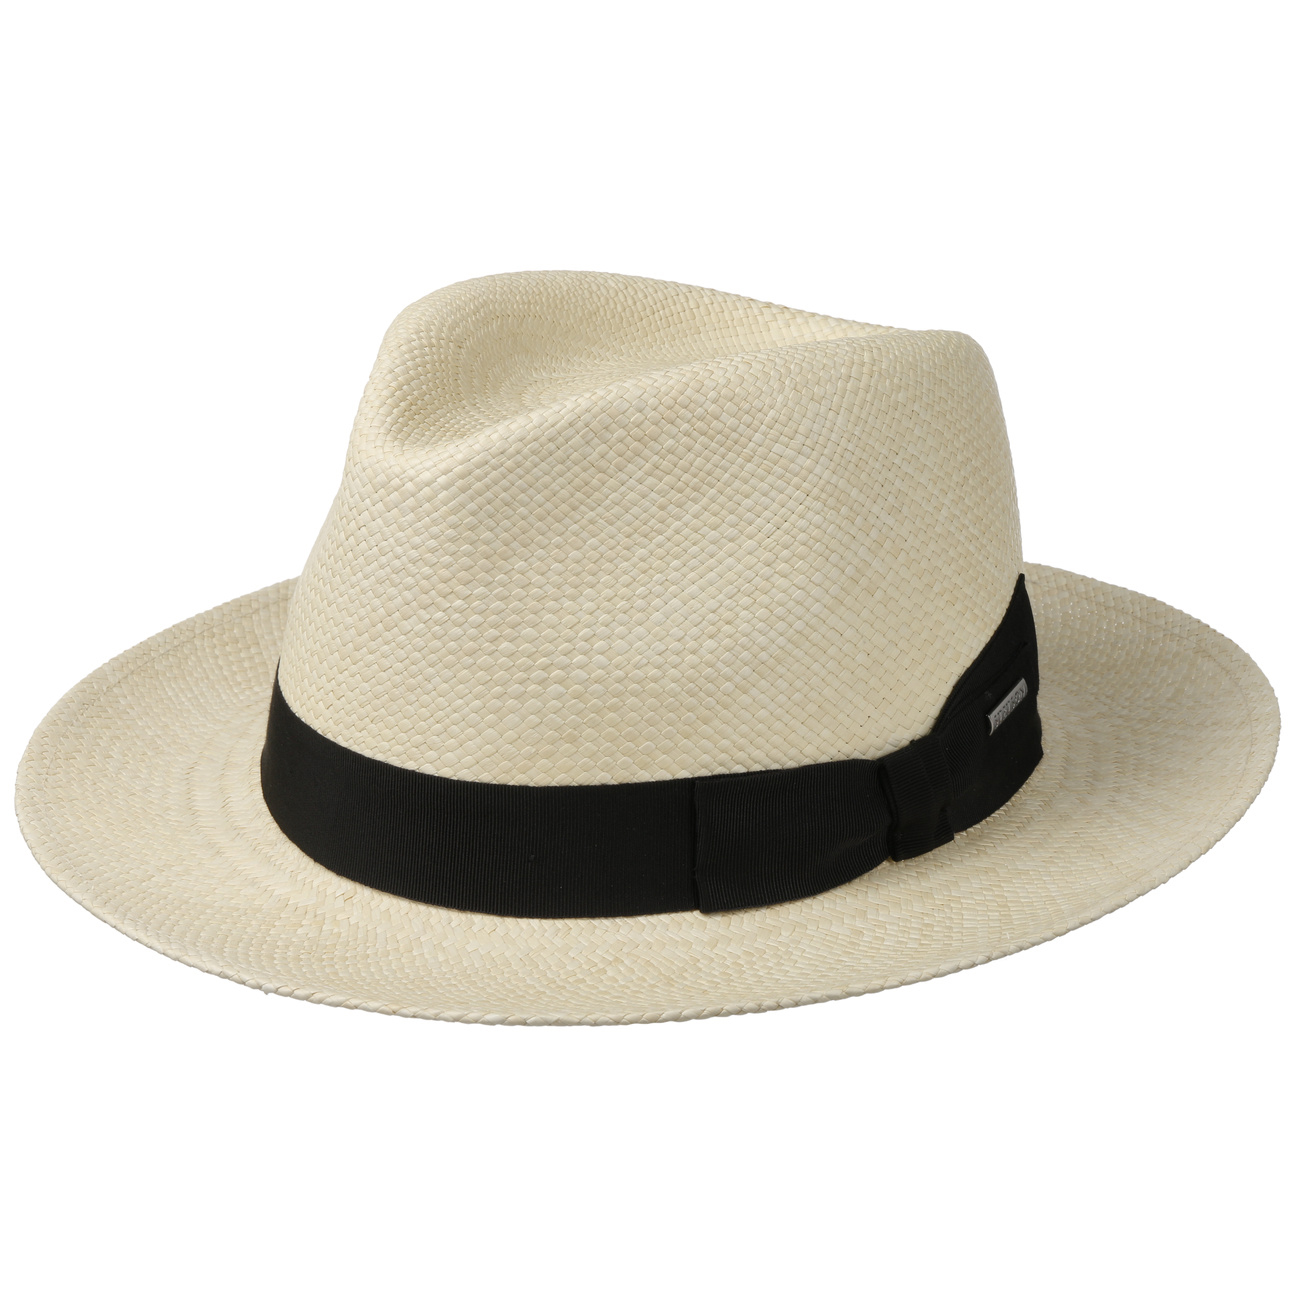 Stetson - Valeco Fedora Panama Hat - Nature